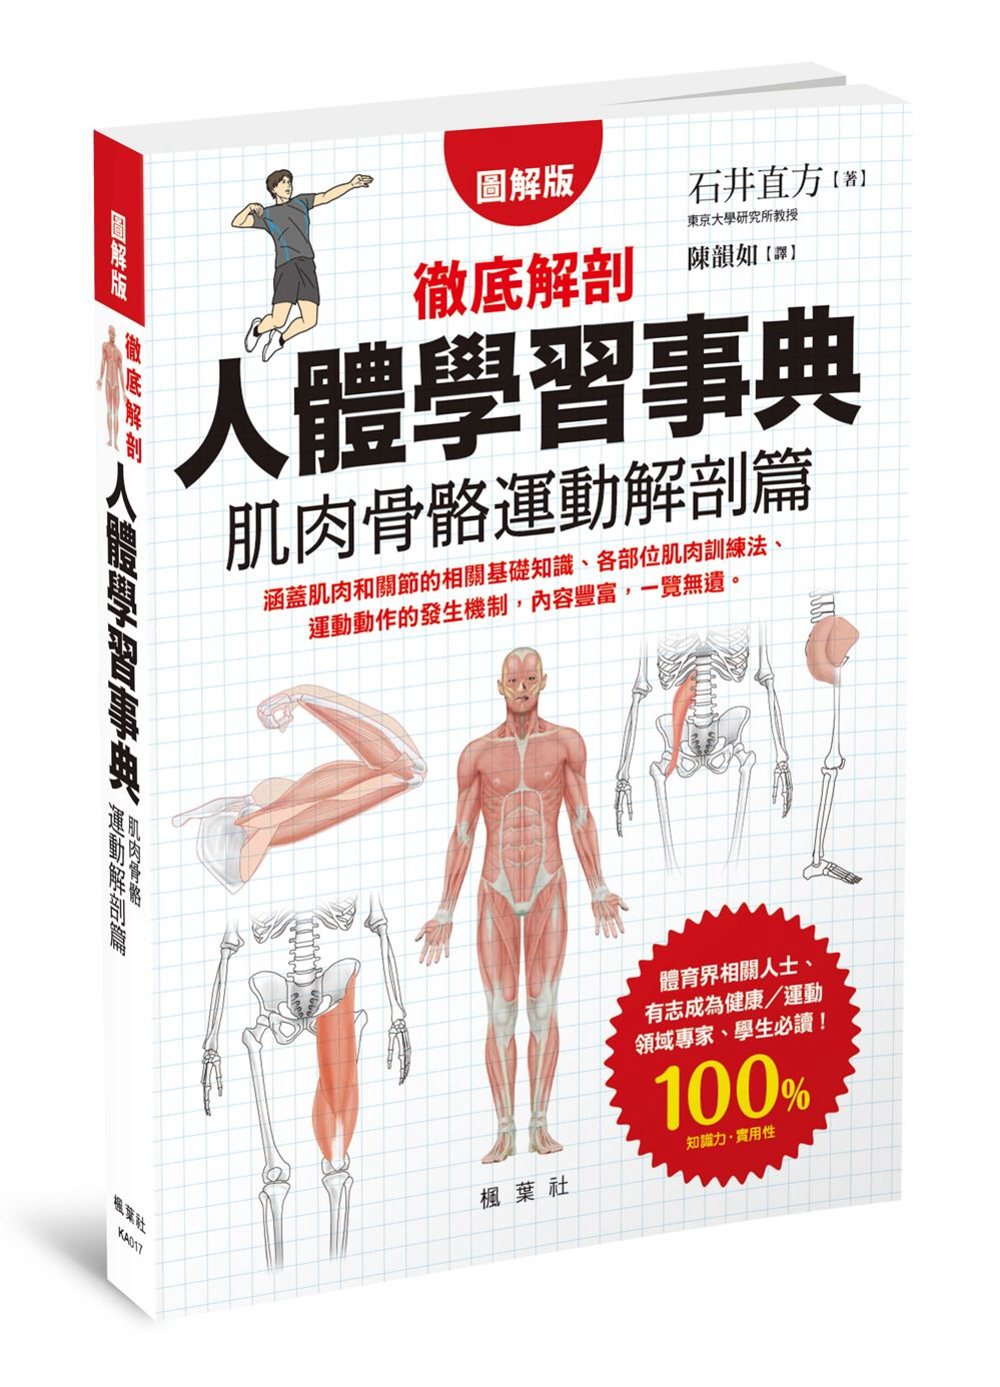 人體學習事典 肌肉骨骼運動解剖篇